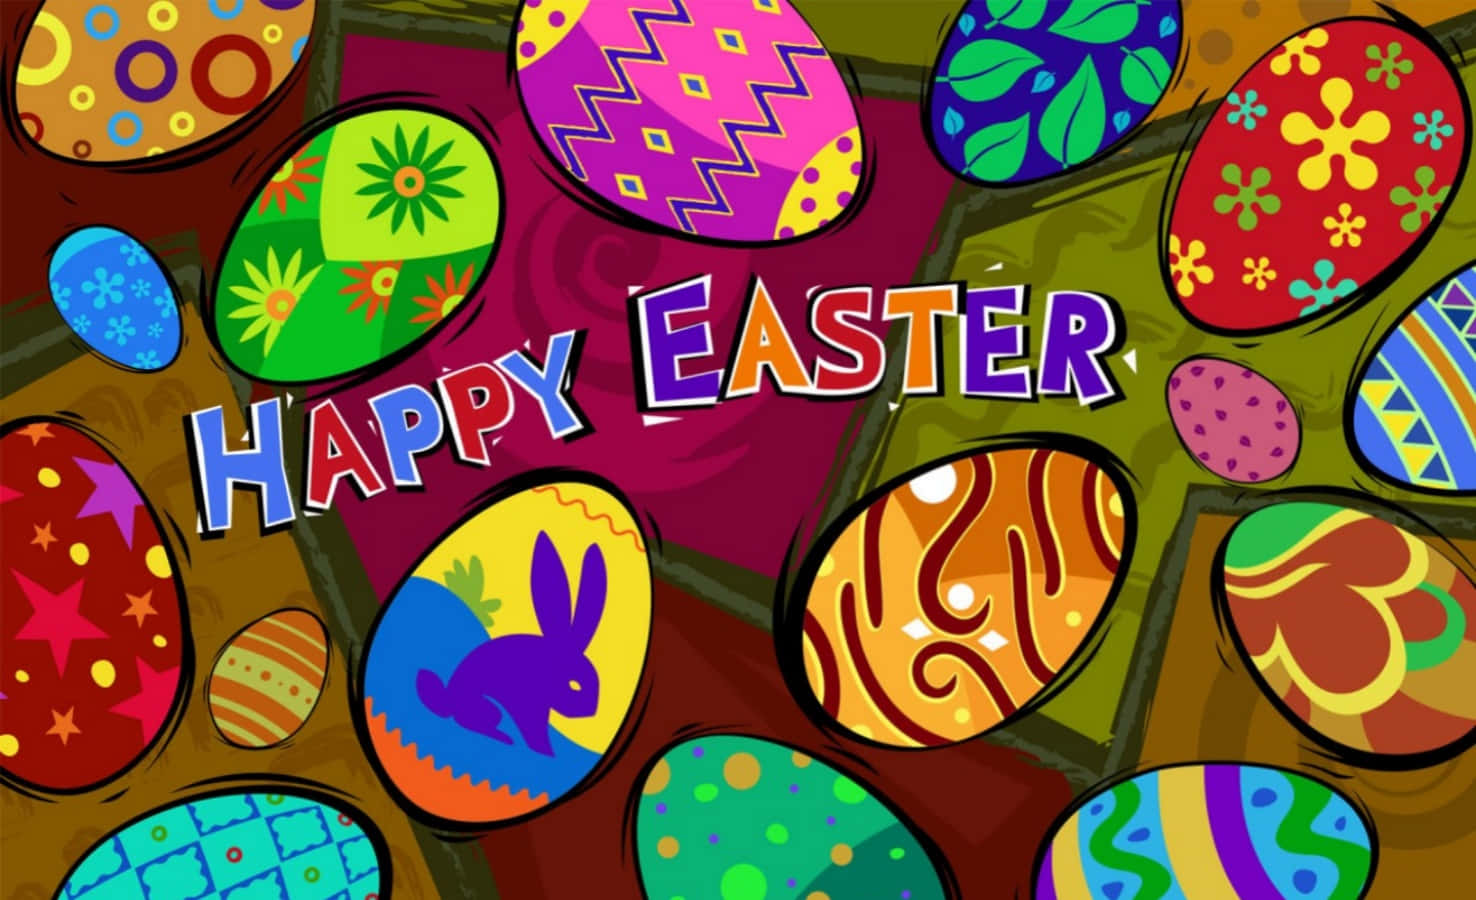 Ichwünsche Dir Ein Helles Und Frohes Ostern!